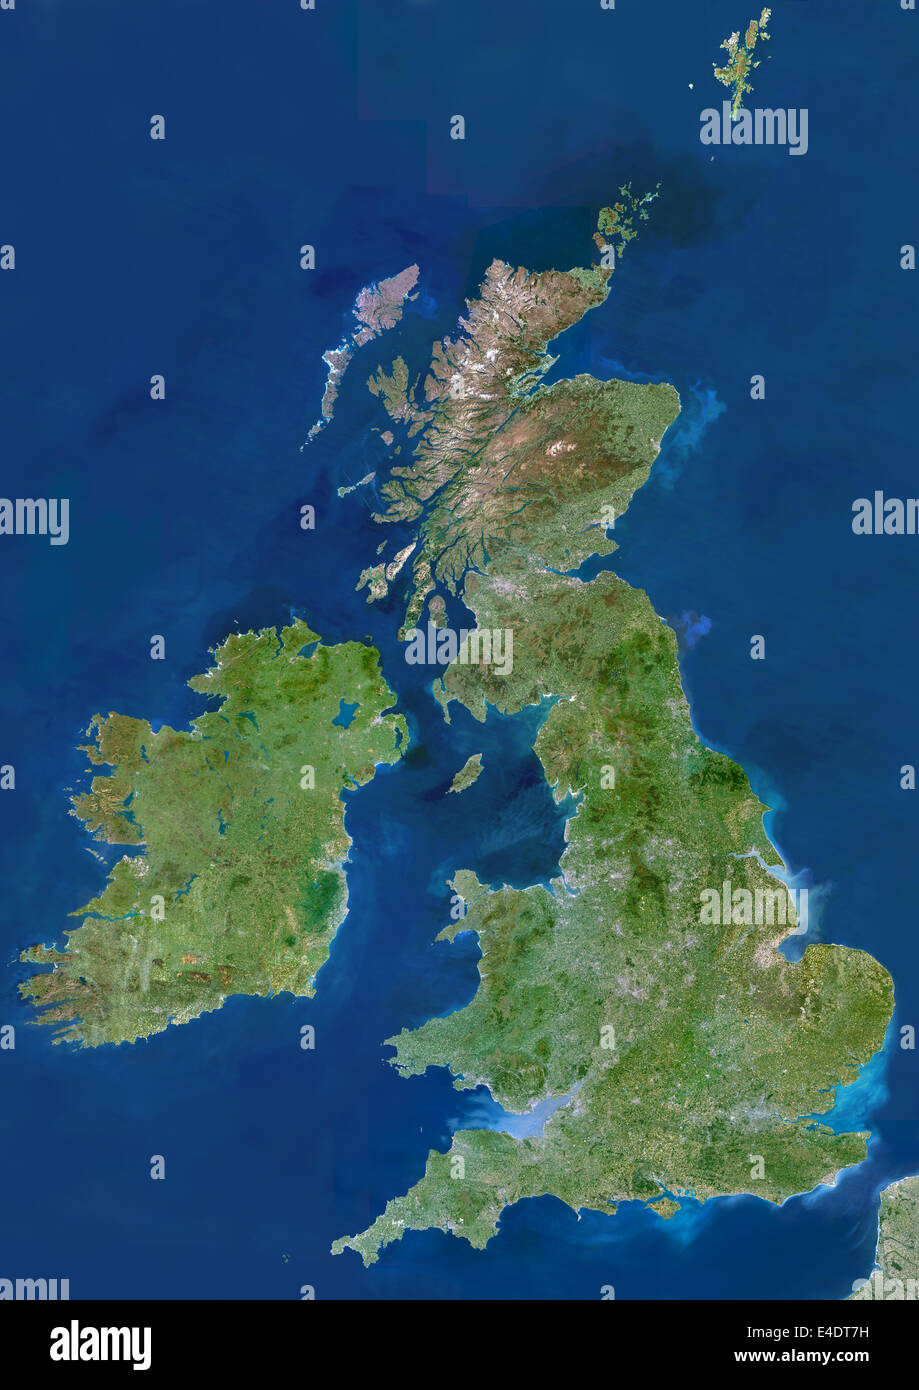 British Isles, True Colour Satellite Image. British Isles, satellite image. The island of Great Britain comprises England (centr Stock Photo